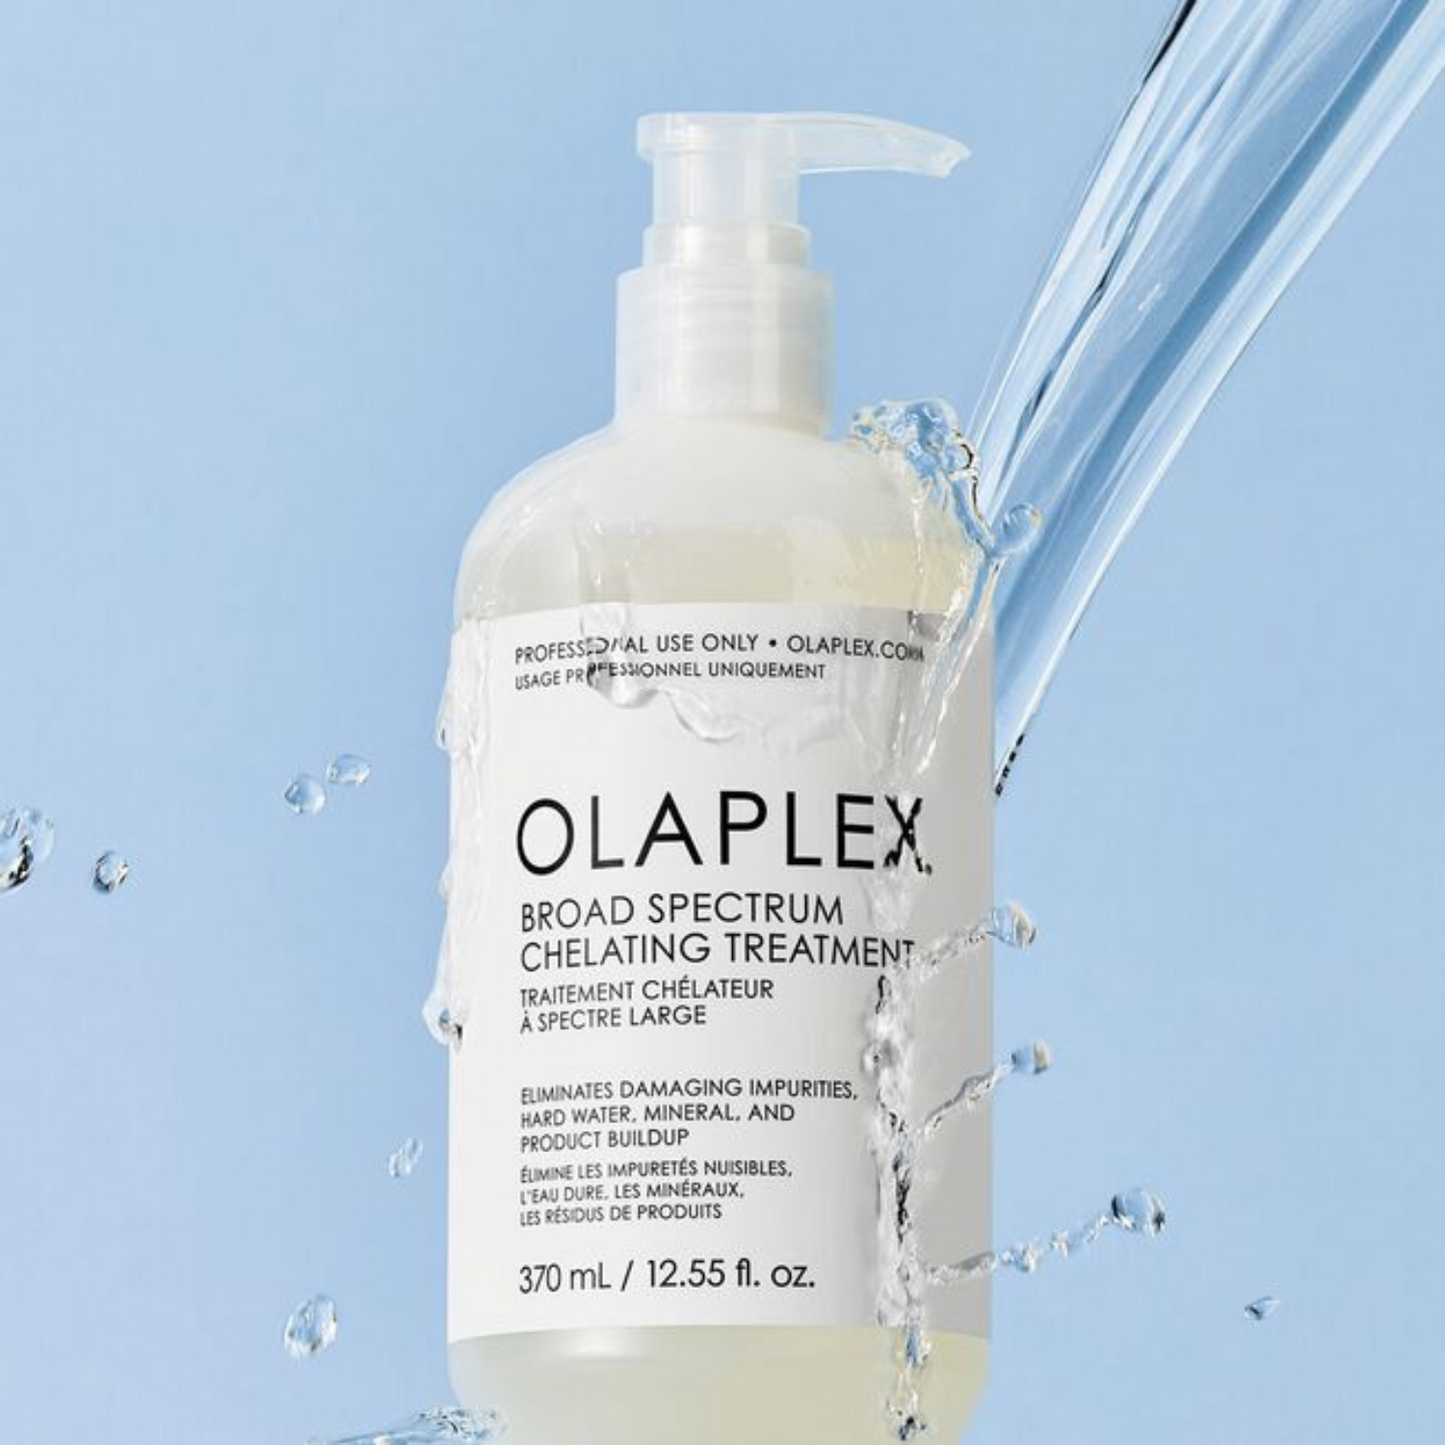 Olaplex - Broad Spectrum Chelating Treatment